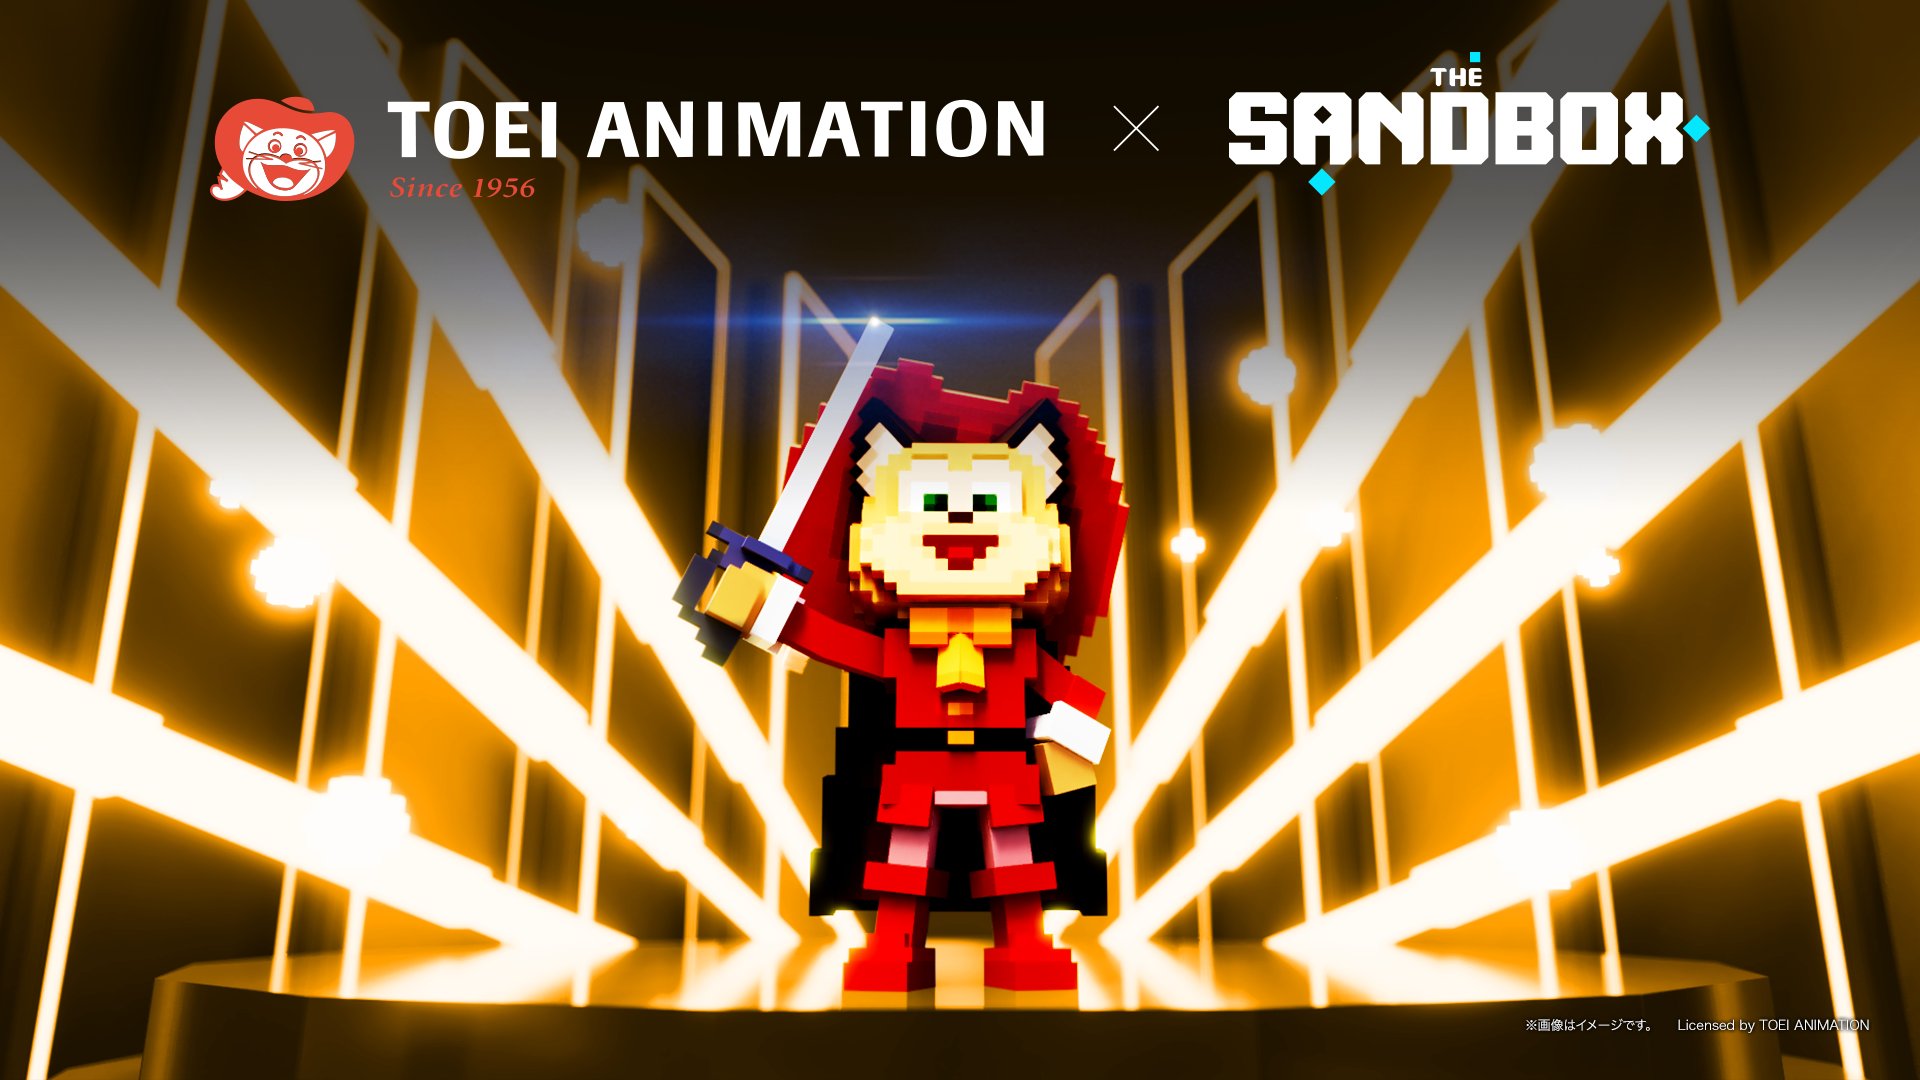 東映アニメーションがThe Sandbox及びMintoと協業し、ブロックチェーンベースのメタバース『The Sandbox』での新規事業をスタート